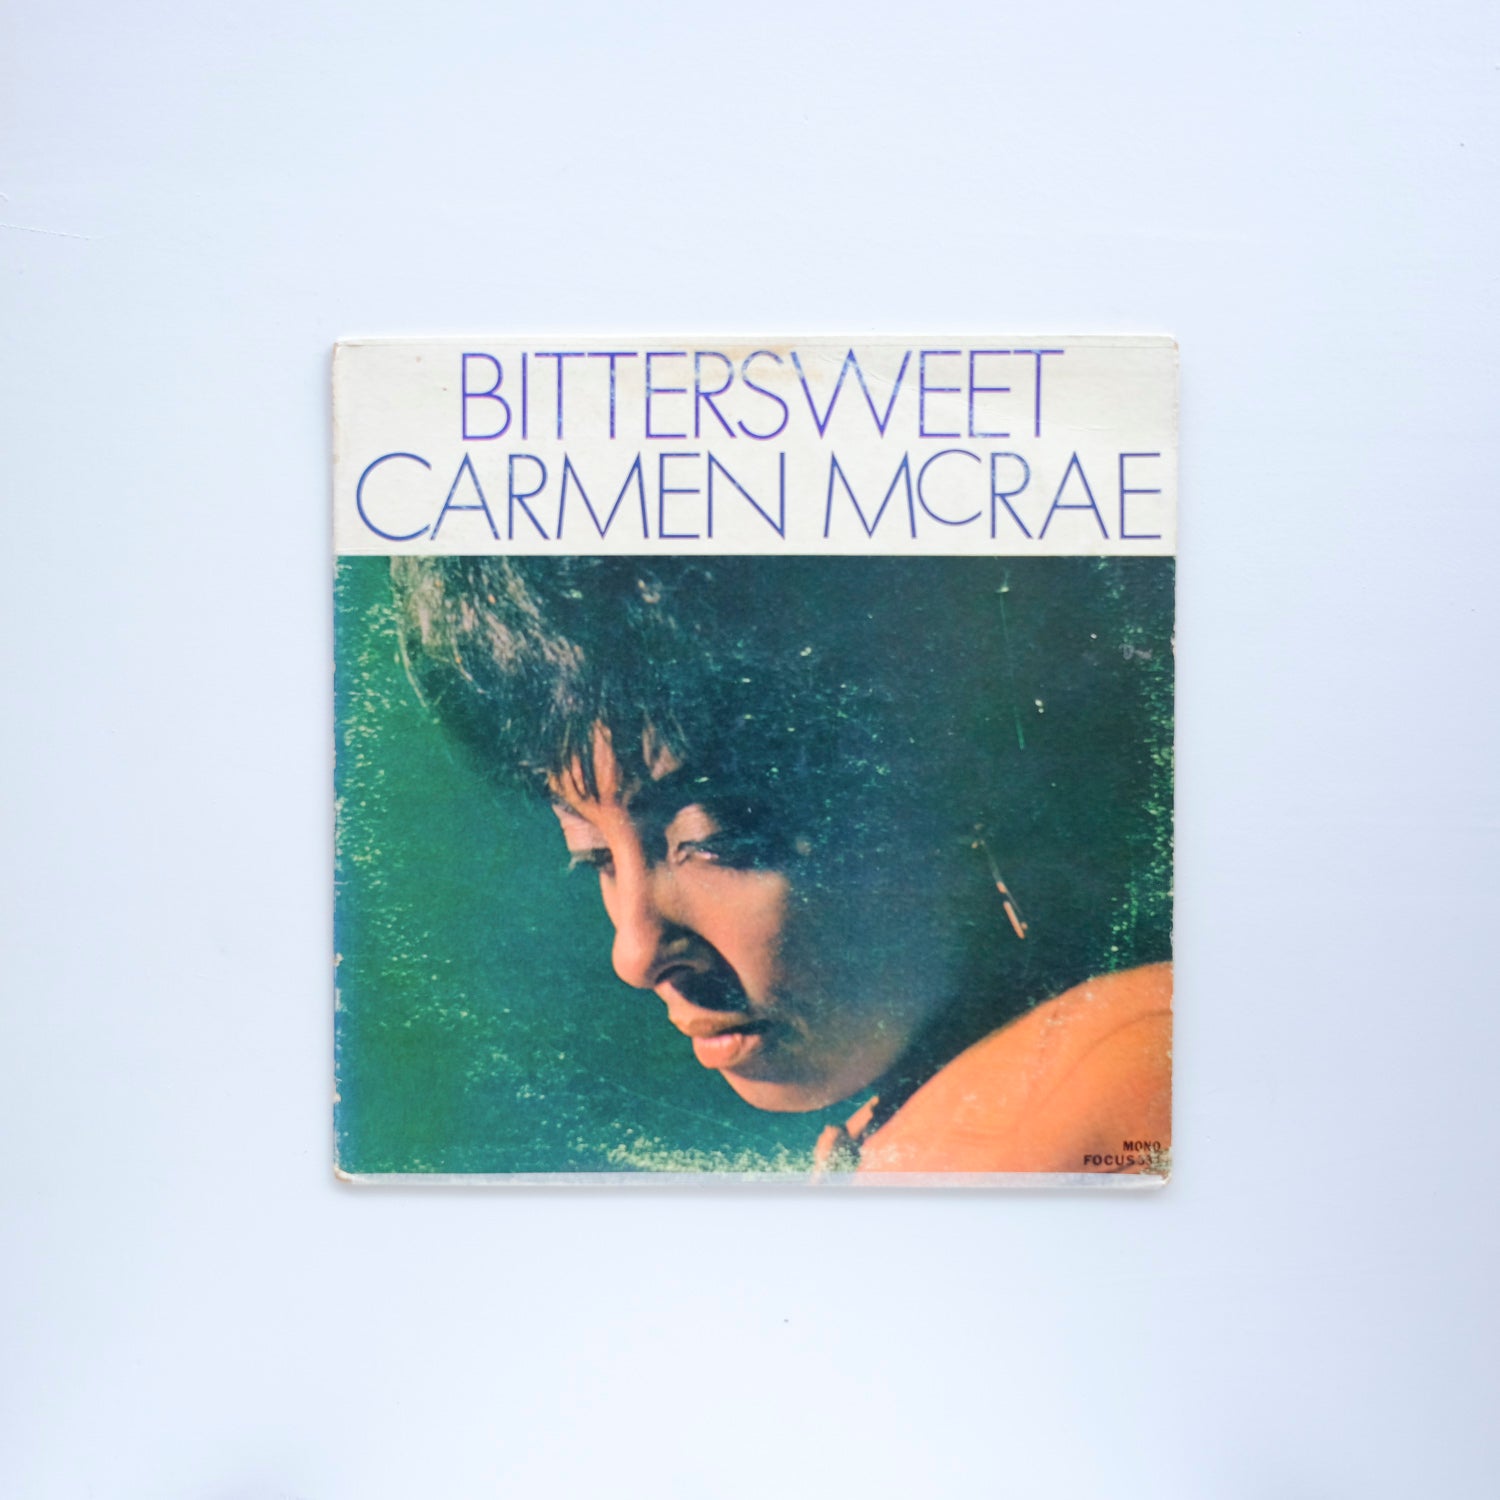 Carmen McCrae - Bittersweet [Mono]